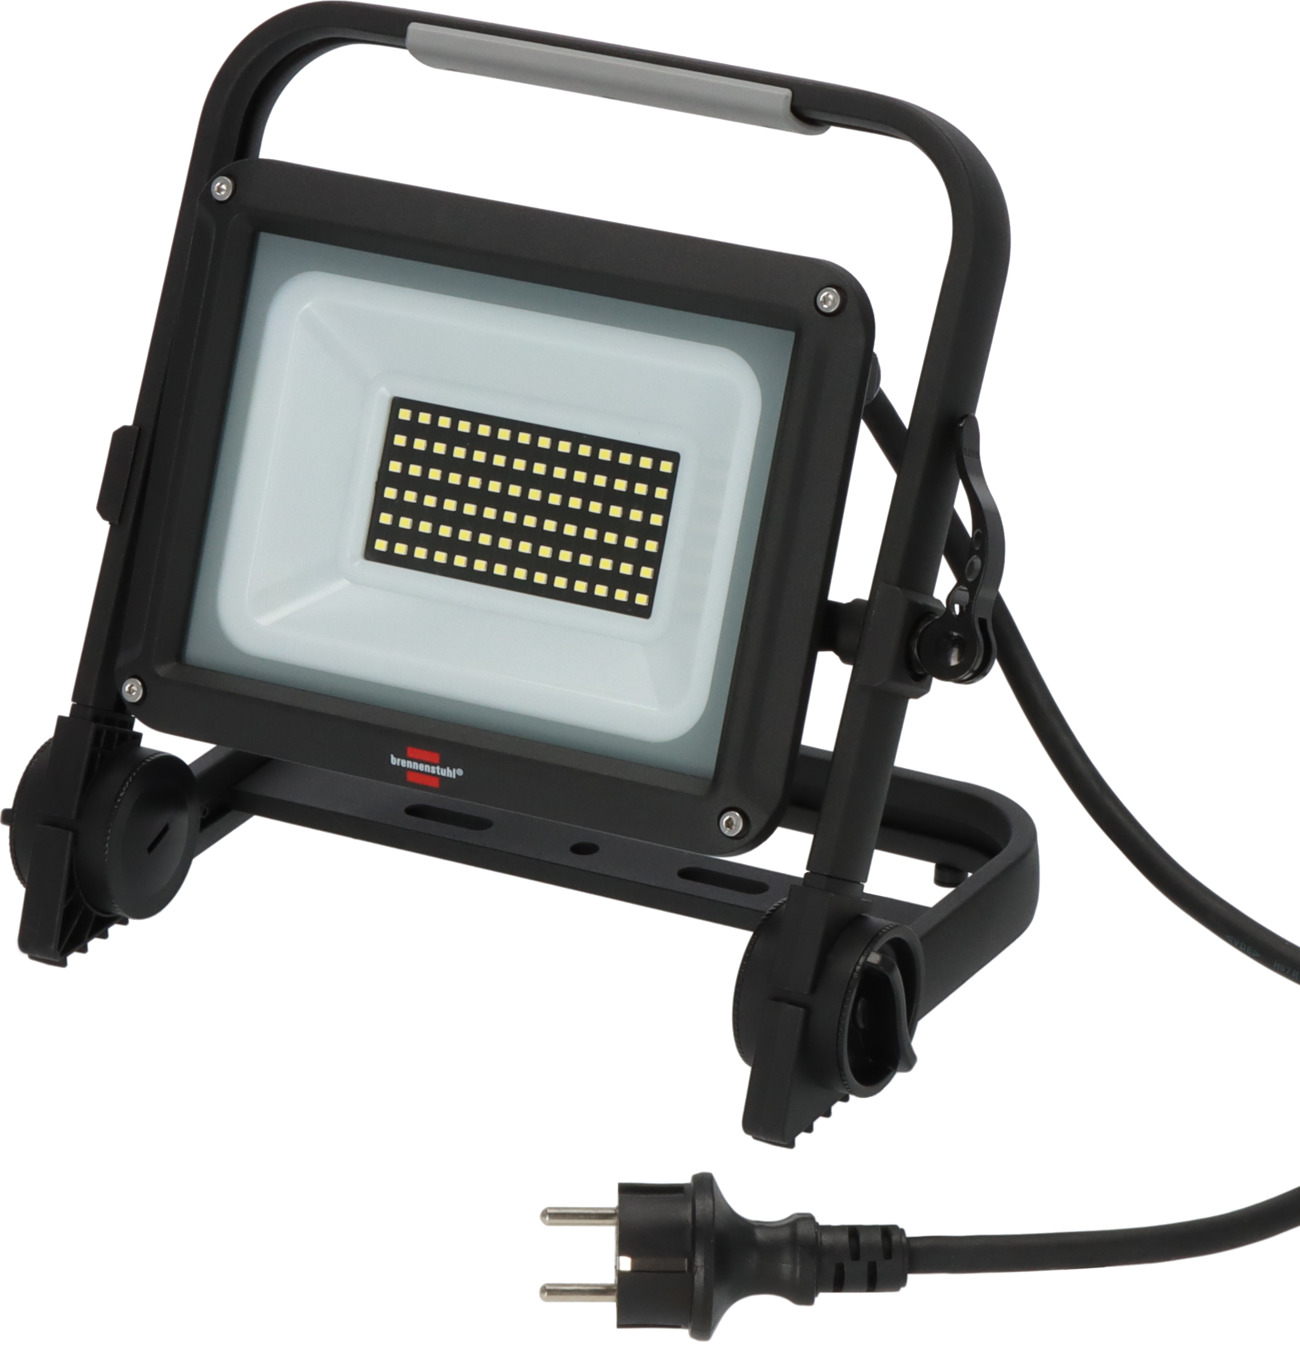 Projecteur LED portable DINORA 8061 FR avec prise de courant, 5m H07RN-F  3G1,5 8300lm, IP54